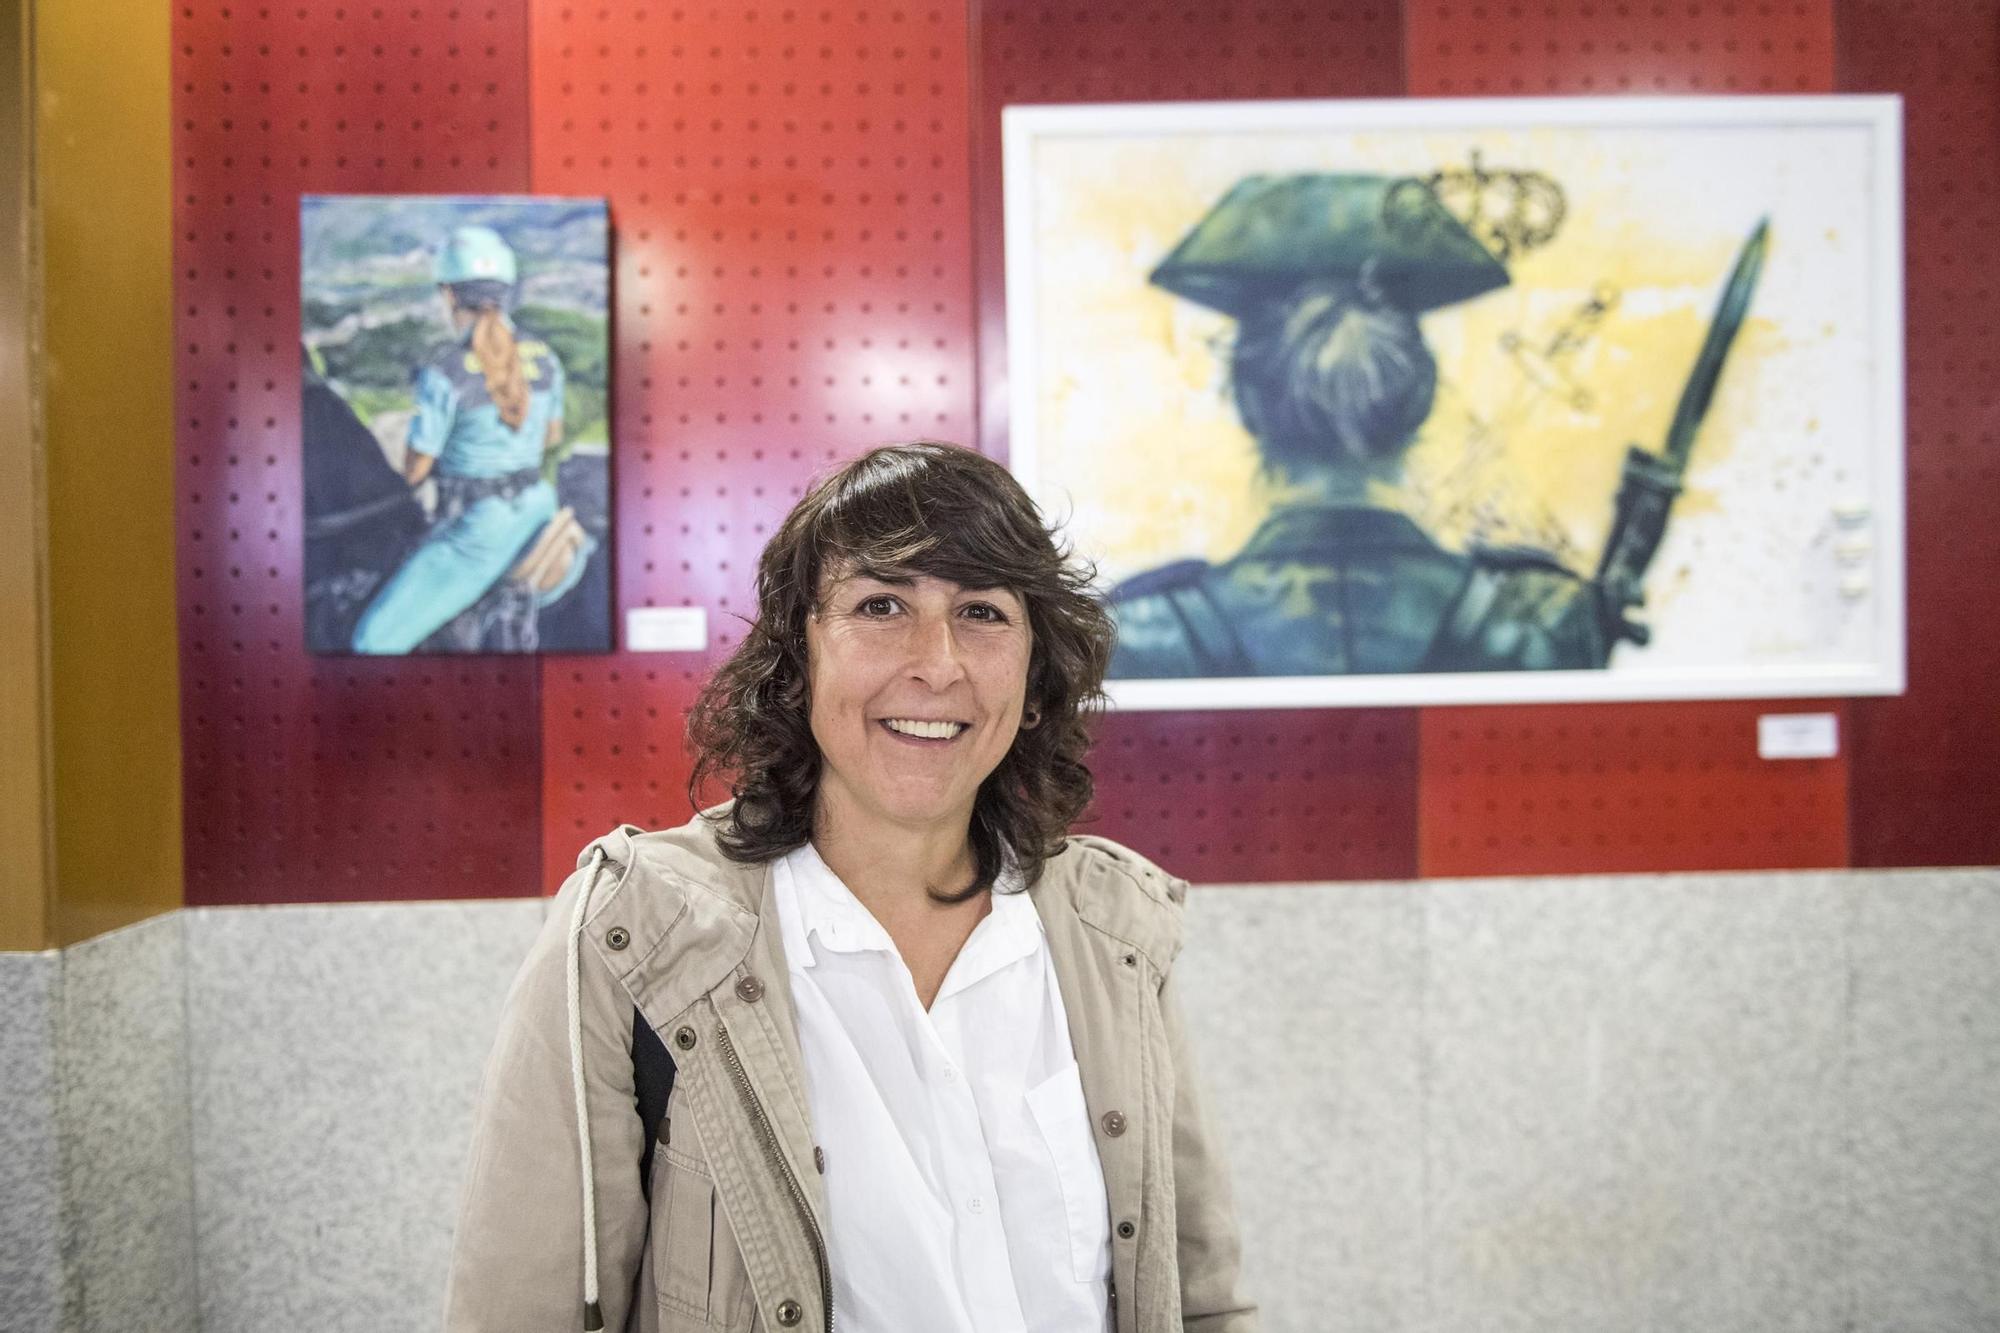 GALERÍA | Así fue la entrega de premios del concurso nacional 'La mujer Guardia Civil' en la Comandancia de Cáceres